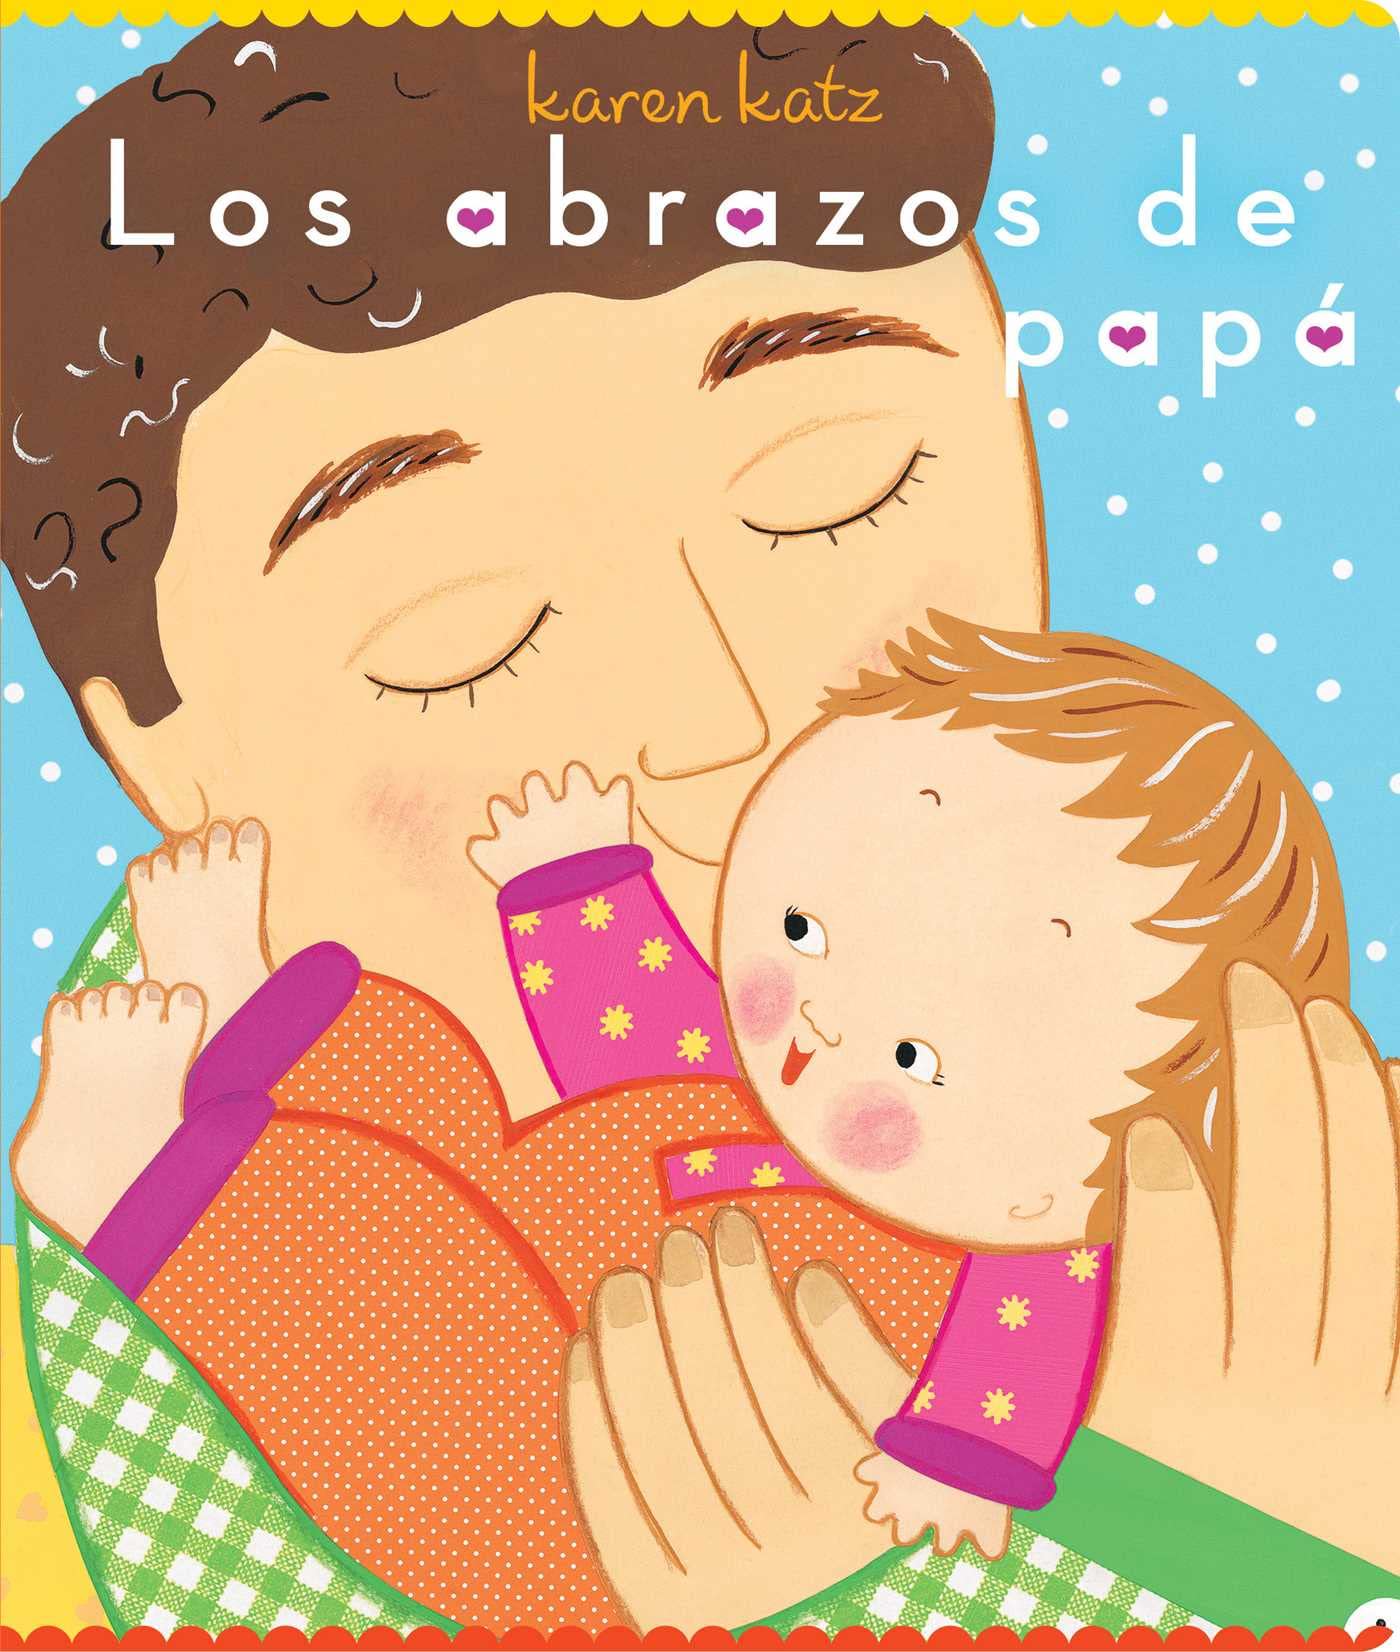 Image for "Los abrazos de papá (Daddy Hugs)"